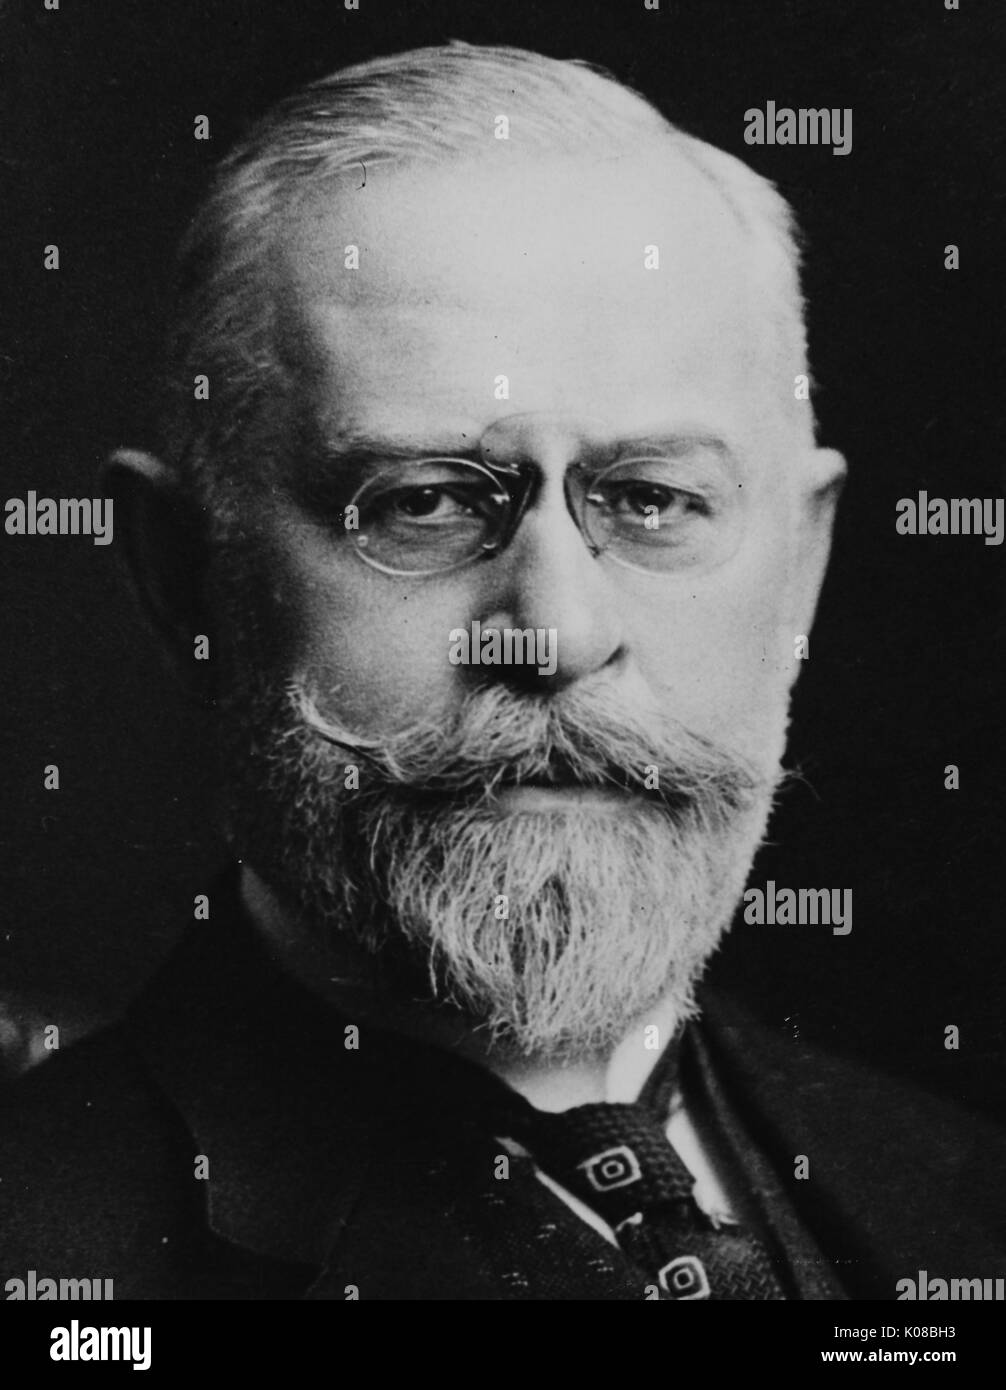 Tirage photographique, photo de profil Henry Wood portant des lunettes, expression faciale neutre, Faculté de Philosophie, United States, 1907. Banque D'Images